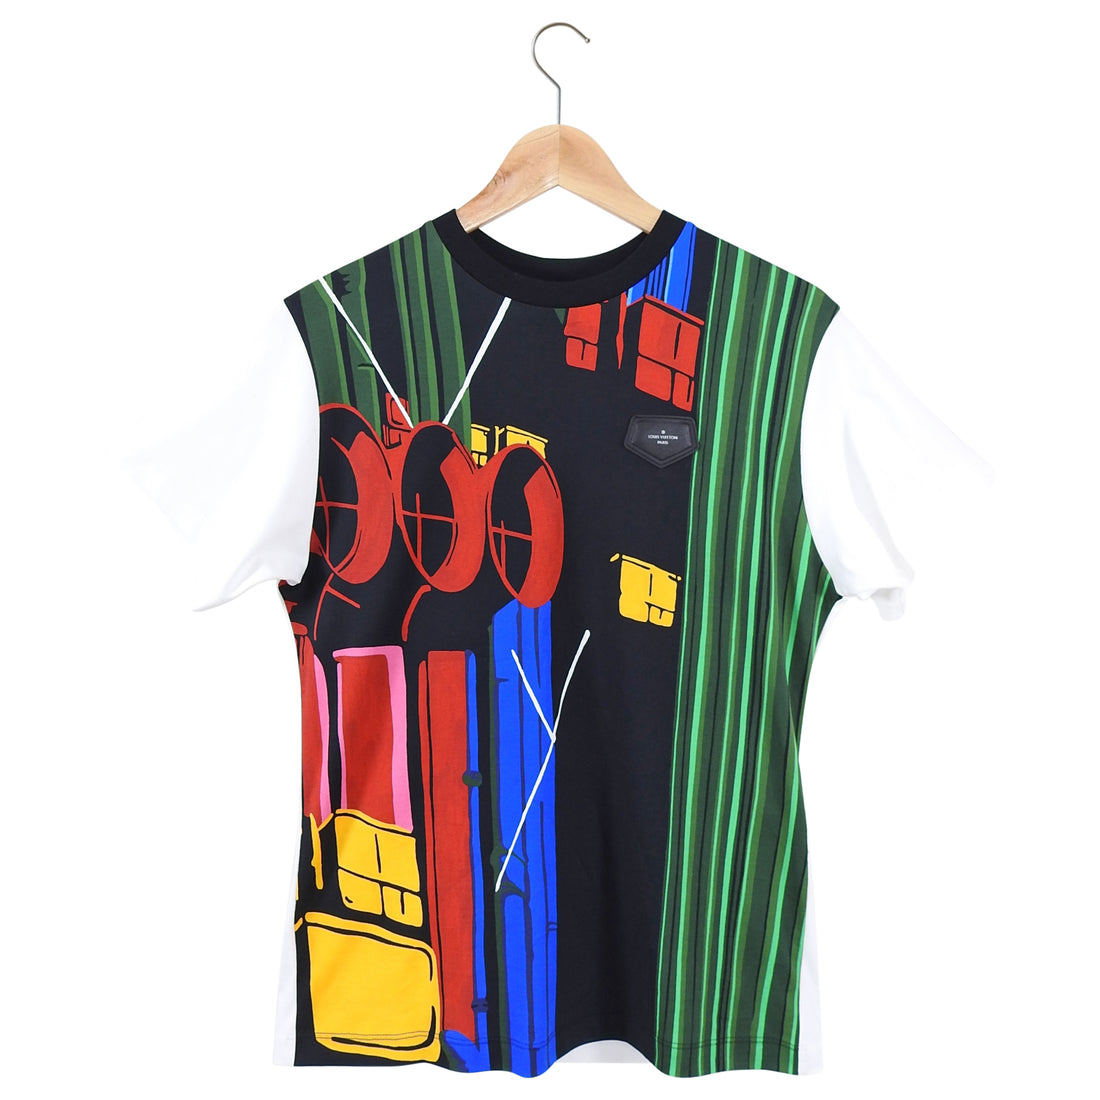 Louis Vuitton Multi Color Graphic Design T Shirt - M